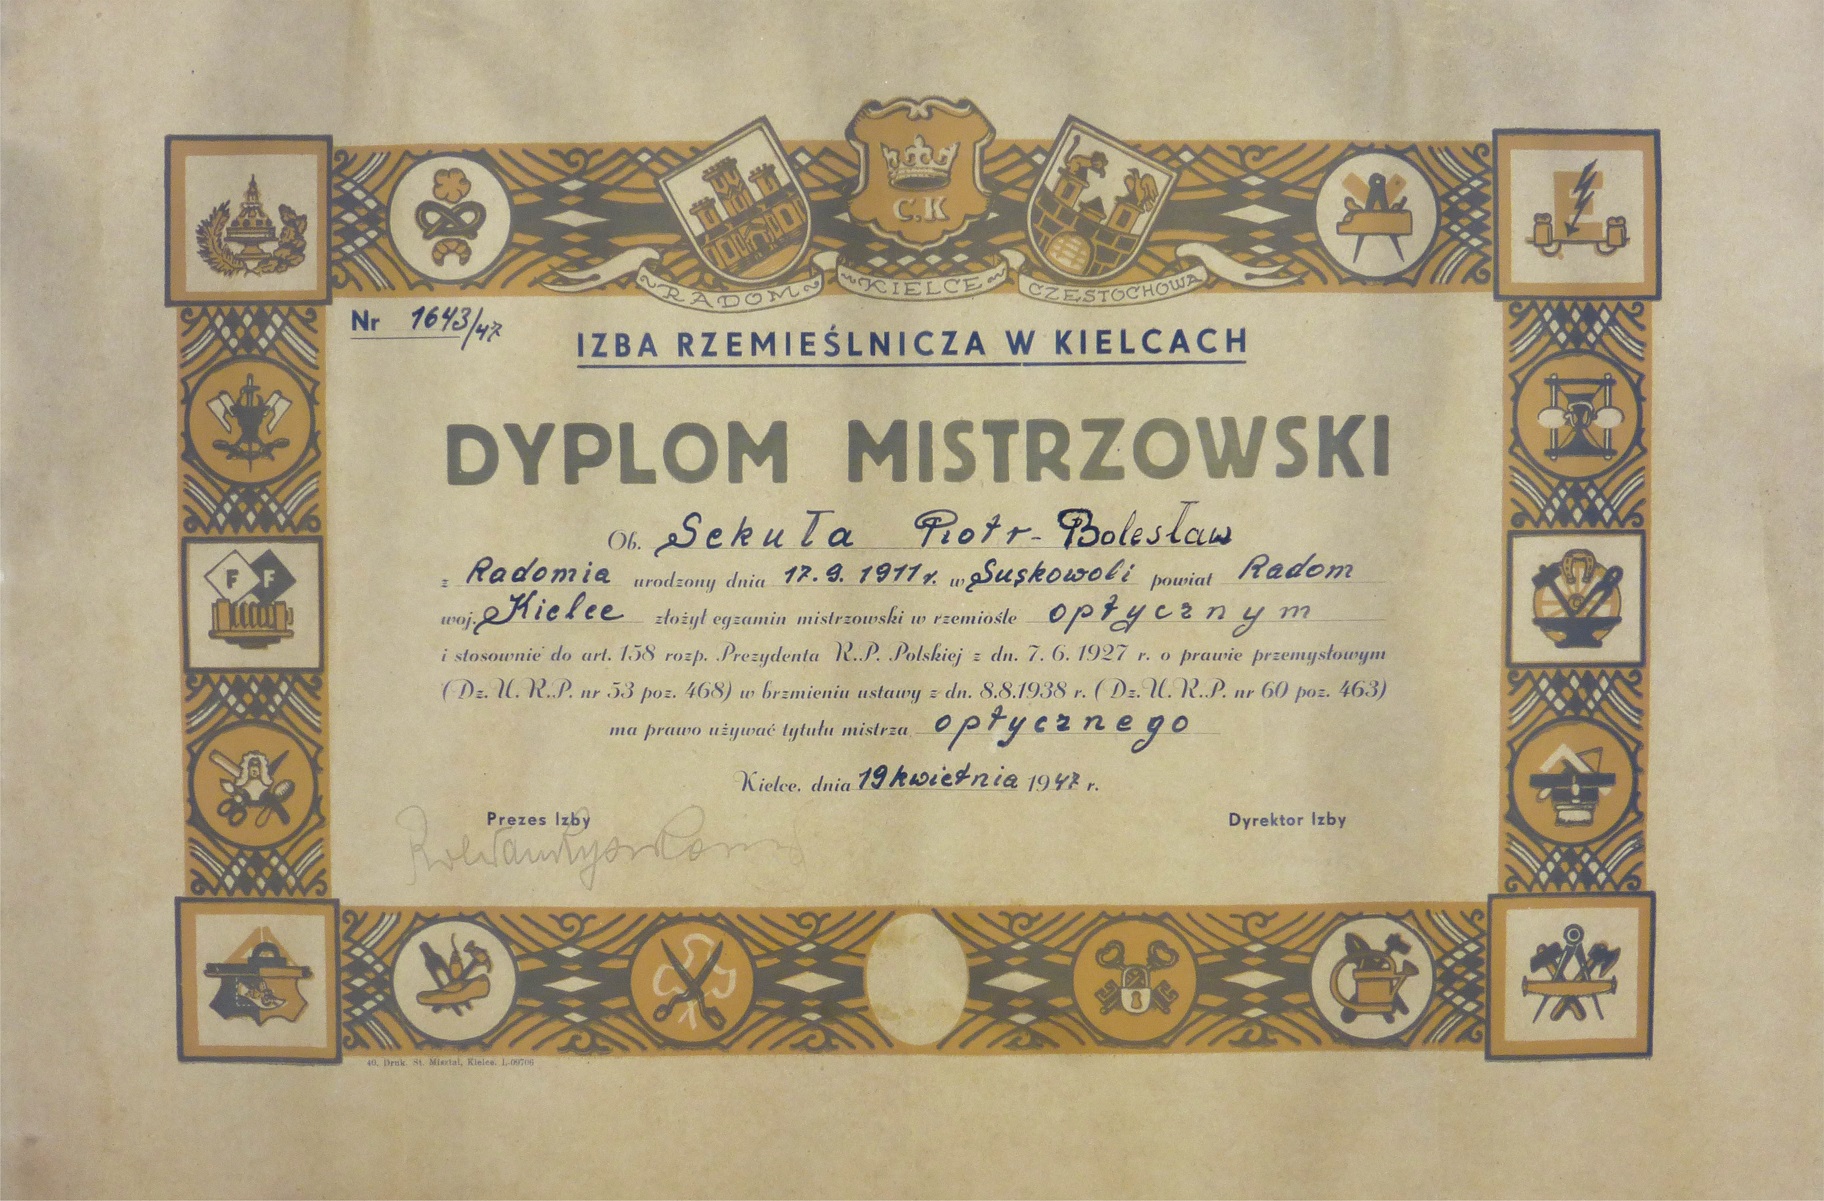 Dyplom Mistrzowski p. Piotra Sekuły, założyciela firmy